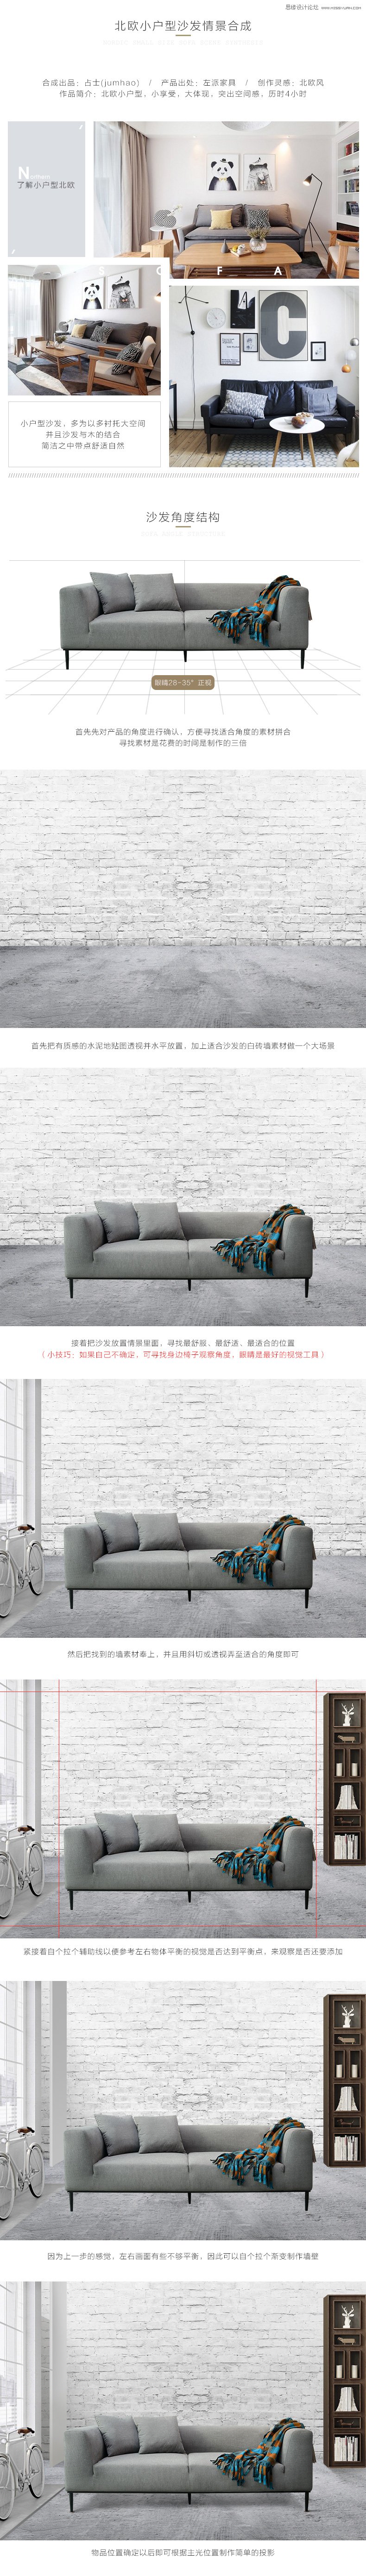 Photoshop合成欧式小户型沙发摆放场景图,PS教程,素材中国网